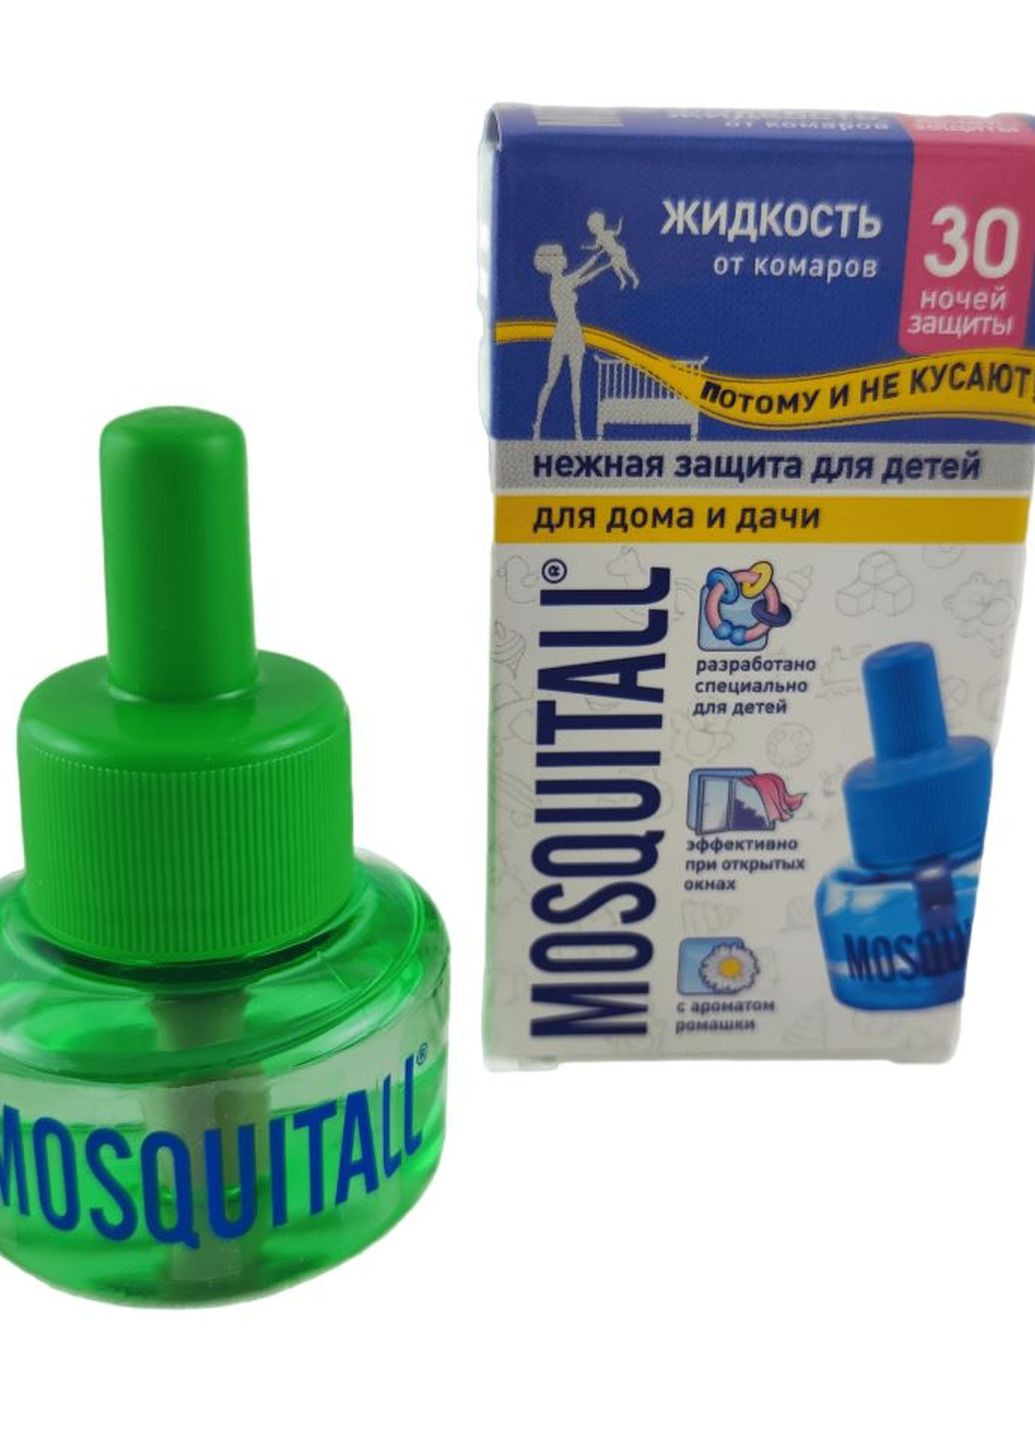 Рідина від комарів Ніжний захист для дітей на 30 ночей, 30мл (000024) Mosquitall (260495605)